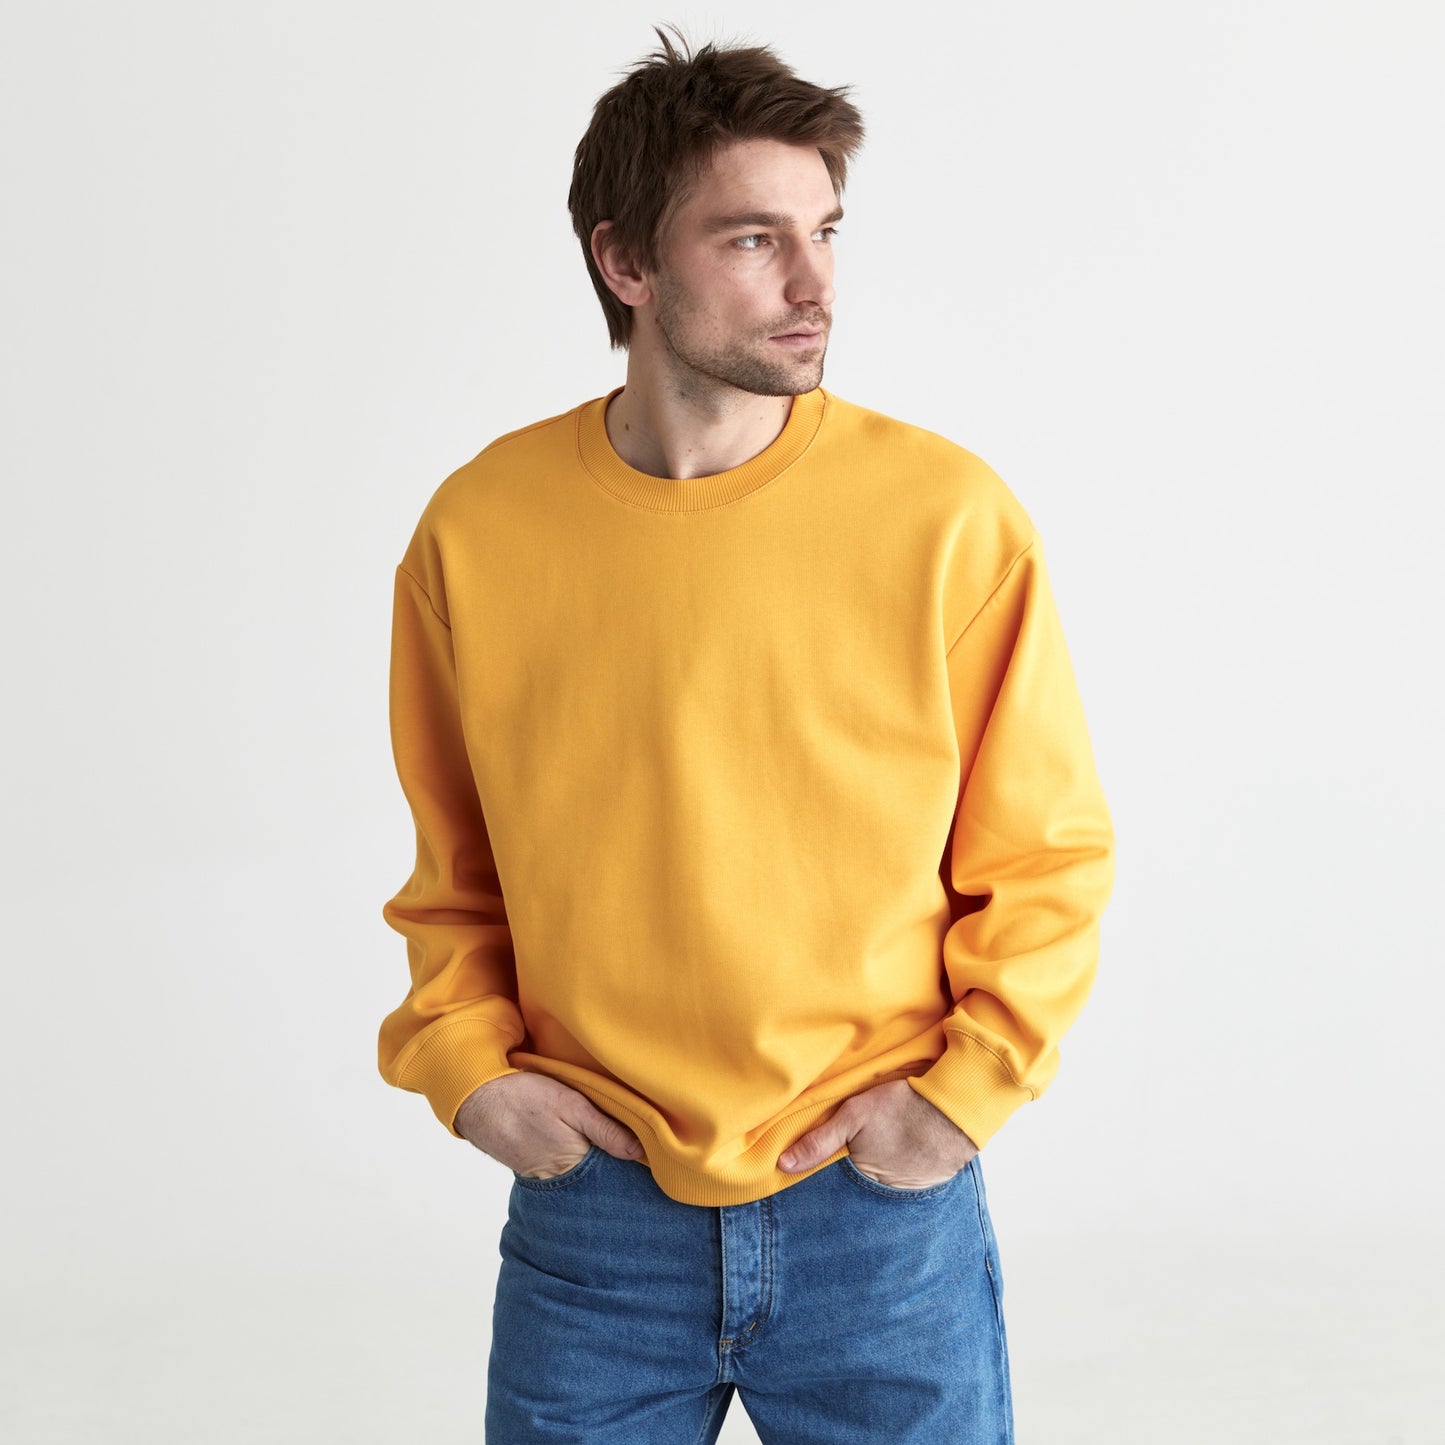 Kiko Sweatshirt in Dandelion